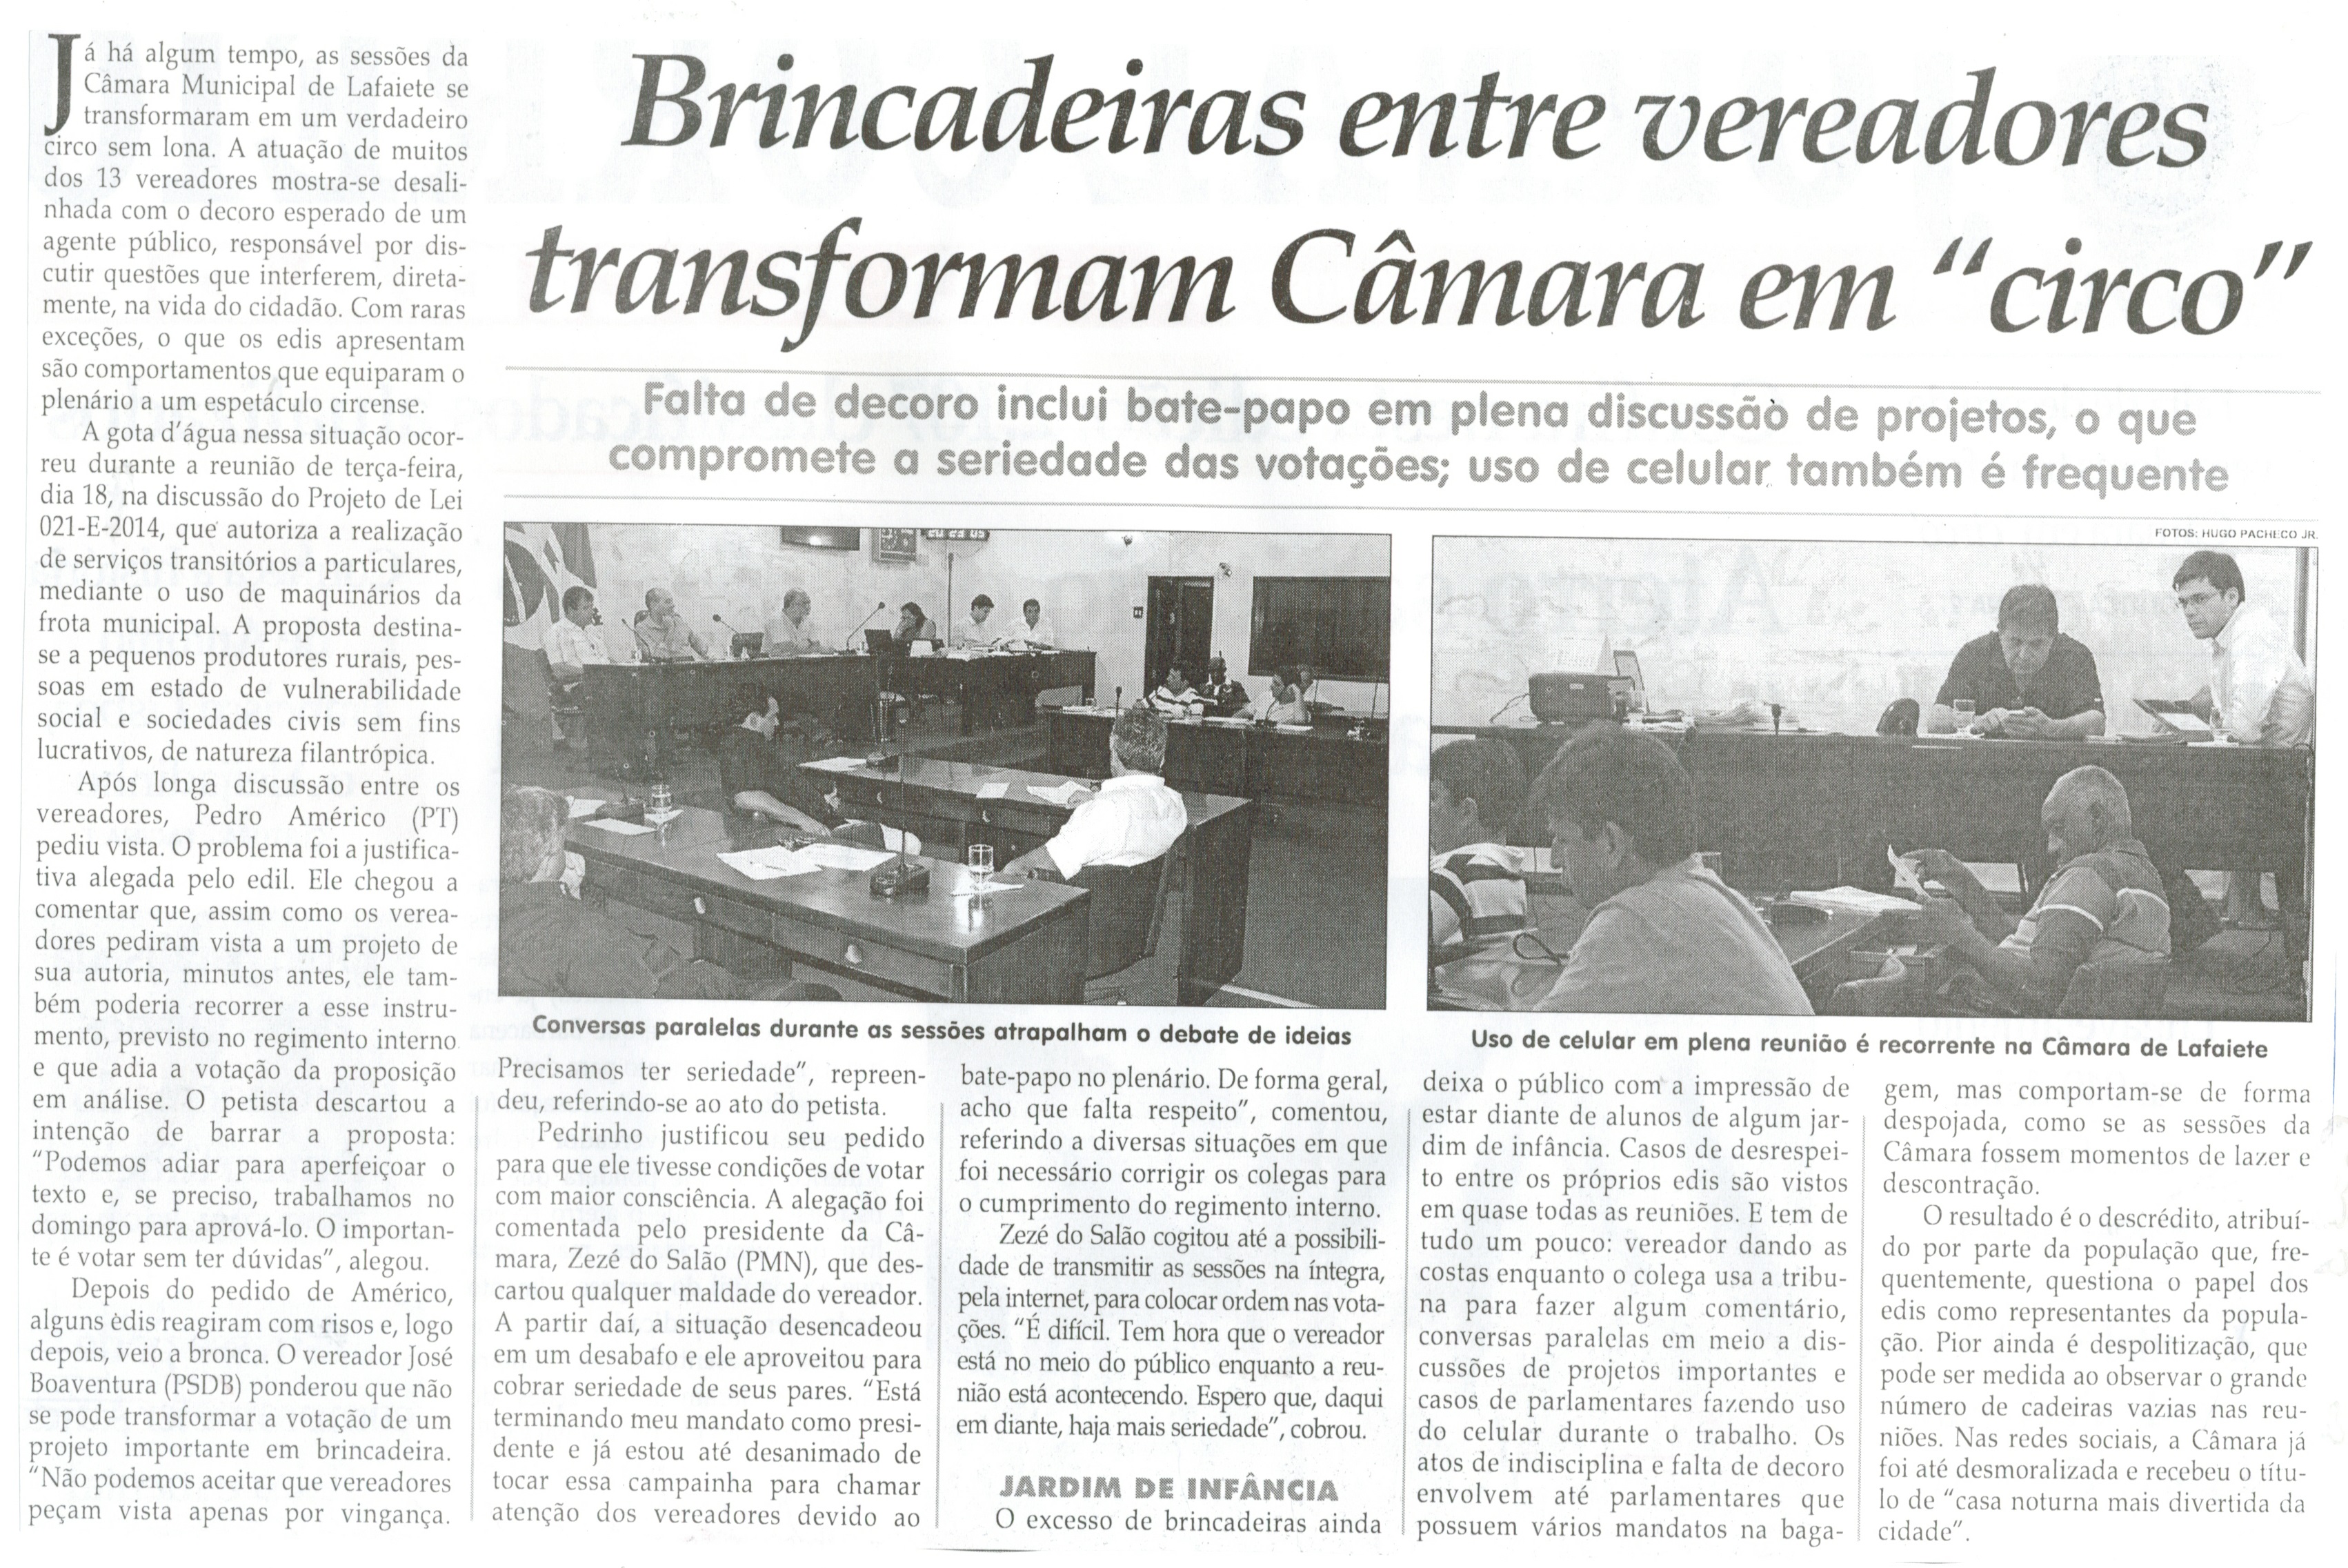 Brincadeiras entre vereadores transformam Câmara em "circo". Jornal Correio da Cidade, Conselheiro Lafaiete, 28 nov. 2014, p. 2.